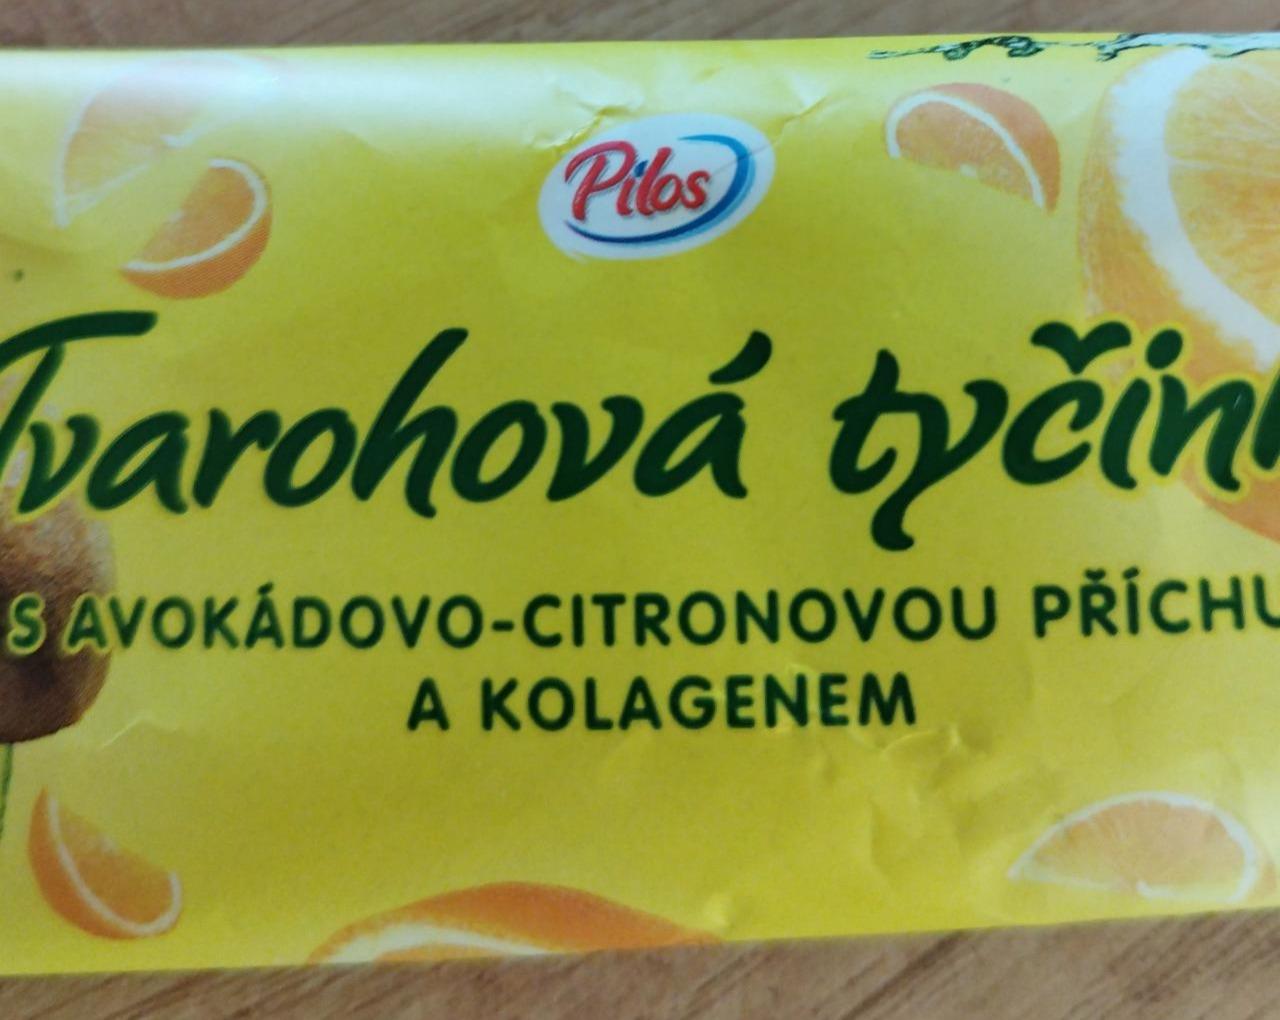 Fotografie - Tvarohová tyčinka s avokádovo-citronovou příchutí a kolagenem Pilos